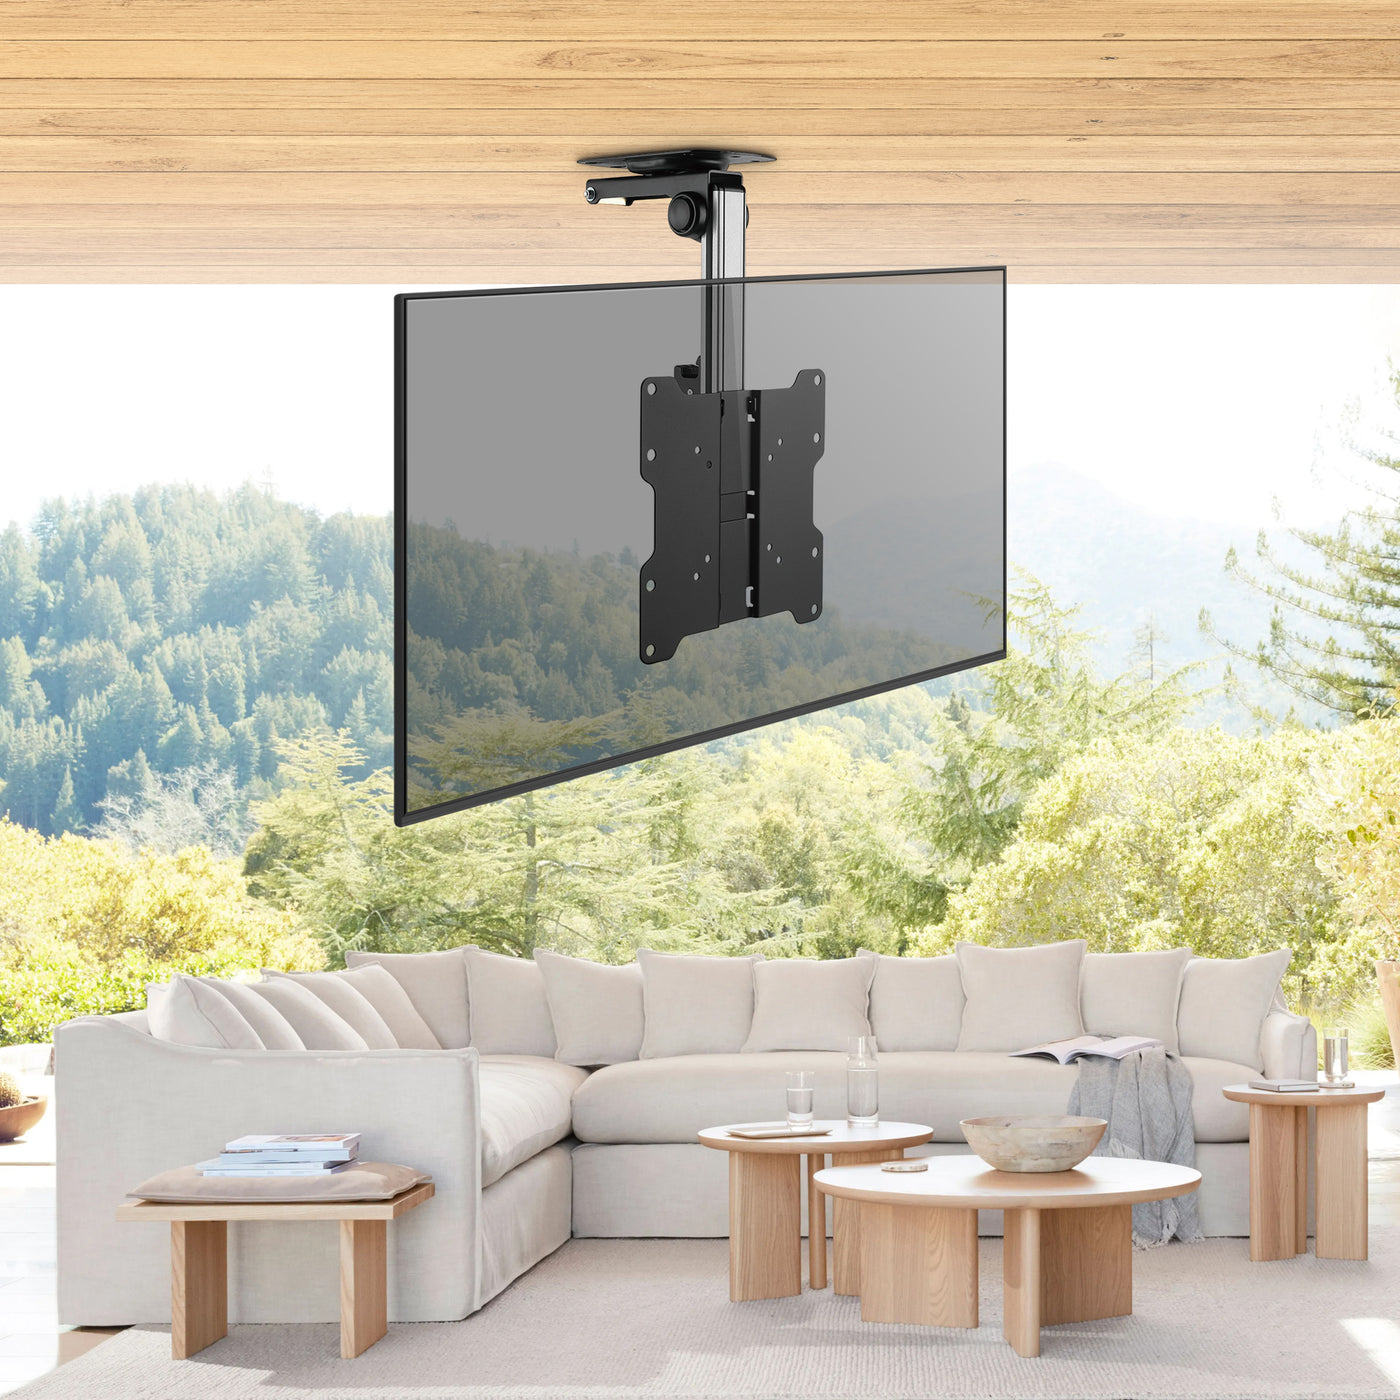 Fold Up Ceiling Tv Mount For Gazebo